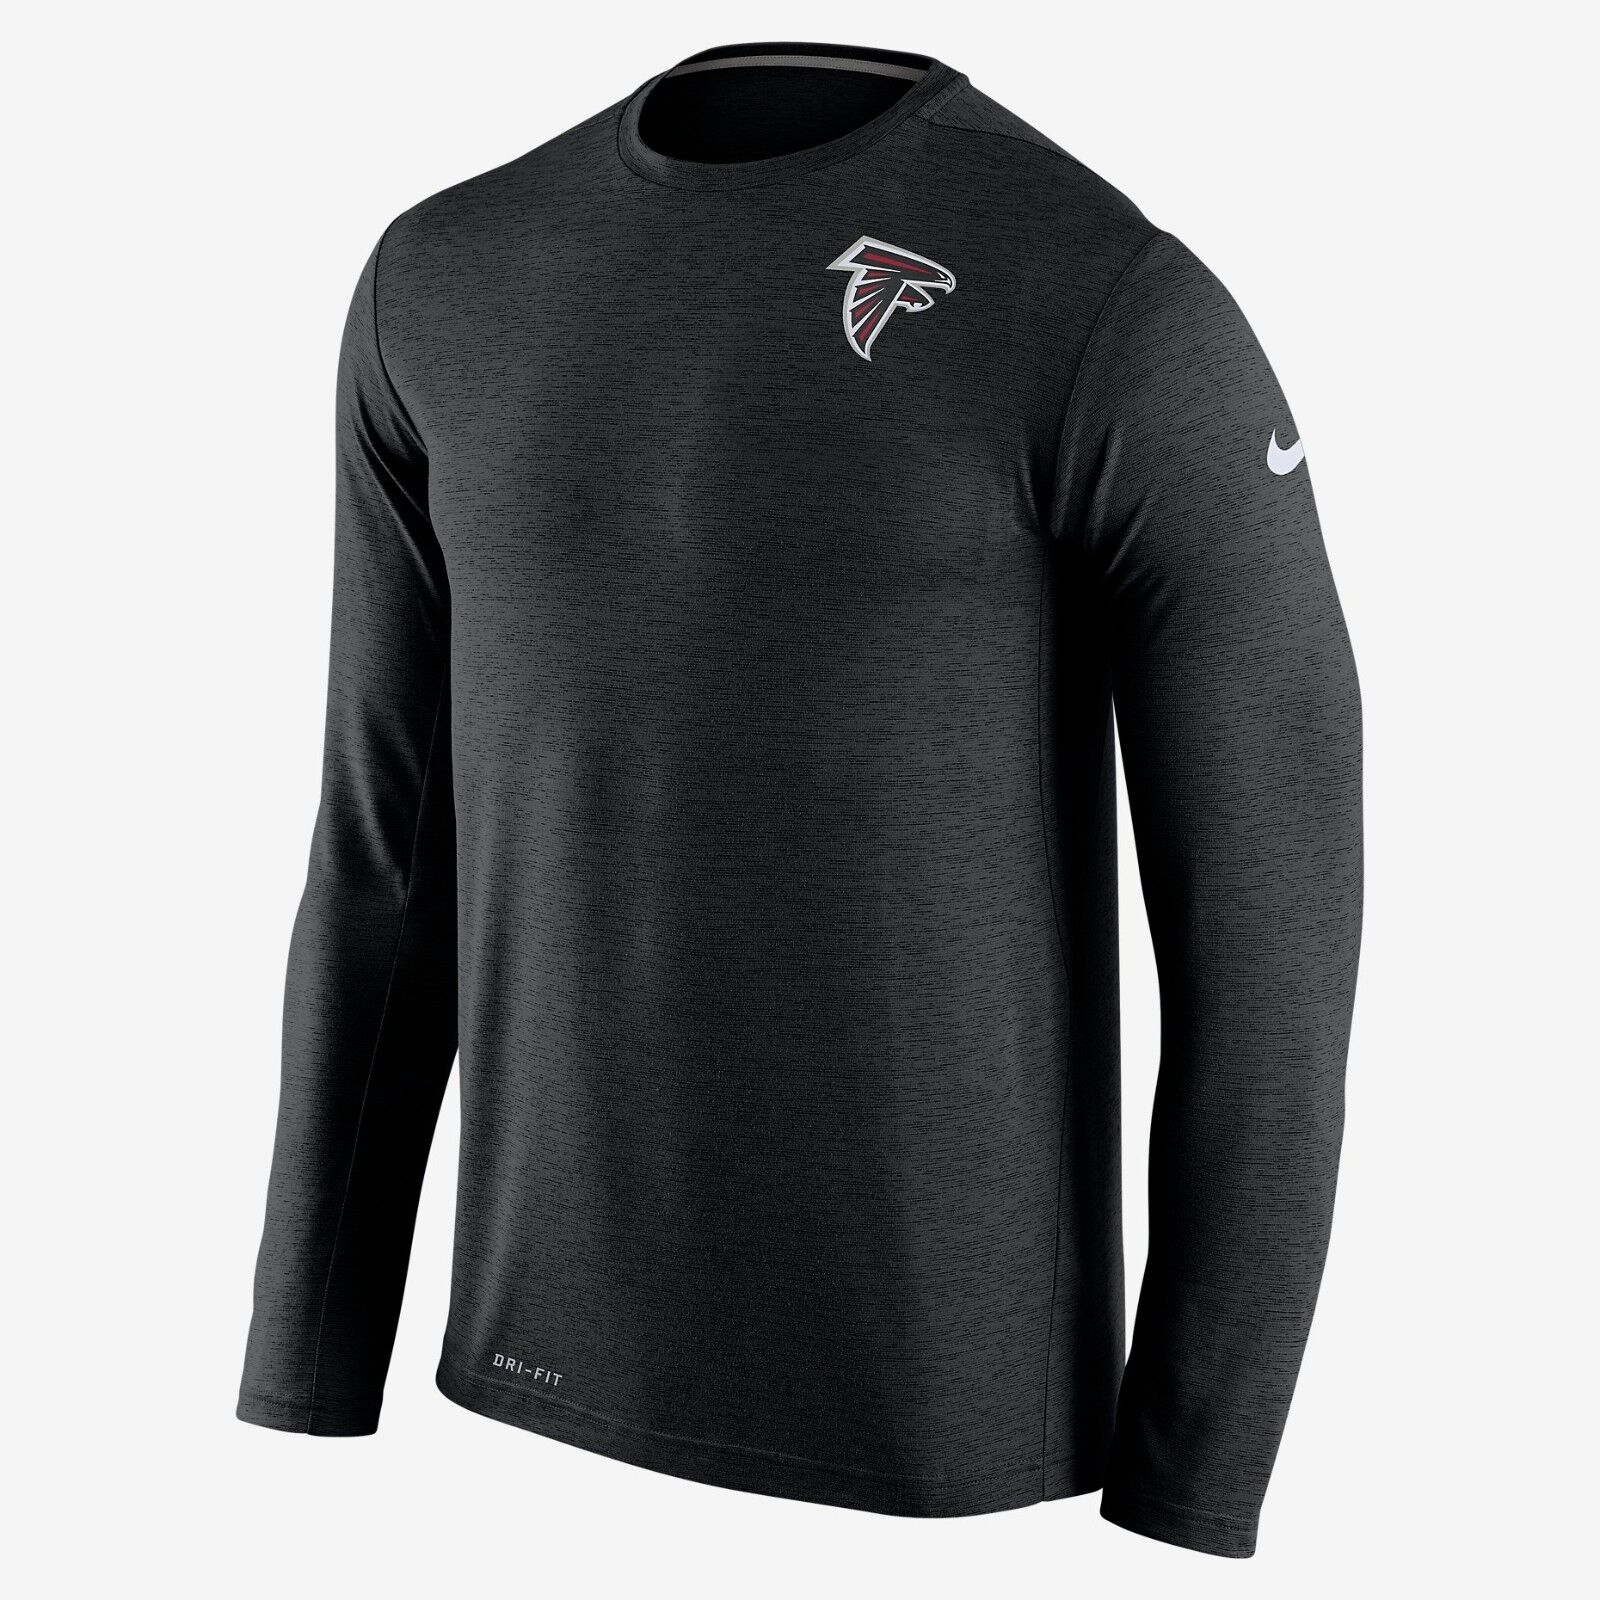 New Nike Men's Dri-FIT NFL Atlanta FALCONS Long Sleeve Tee-shirt ...